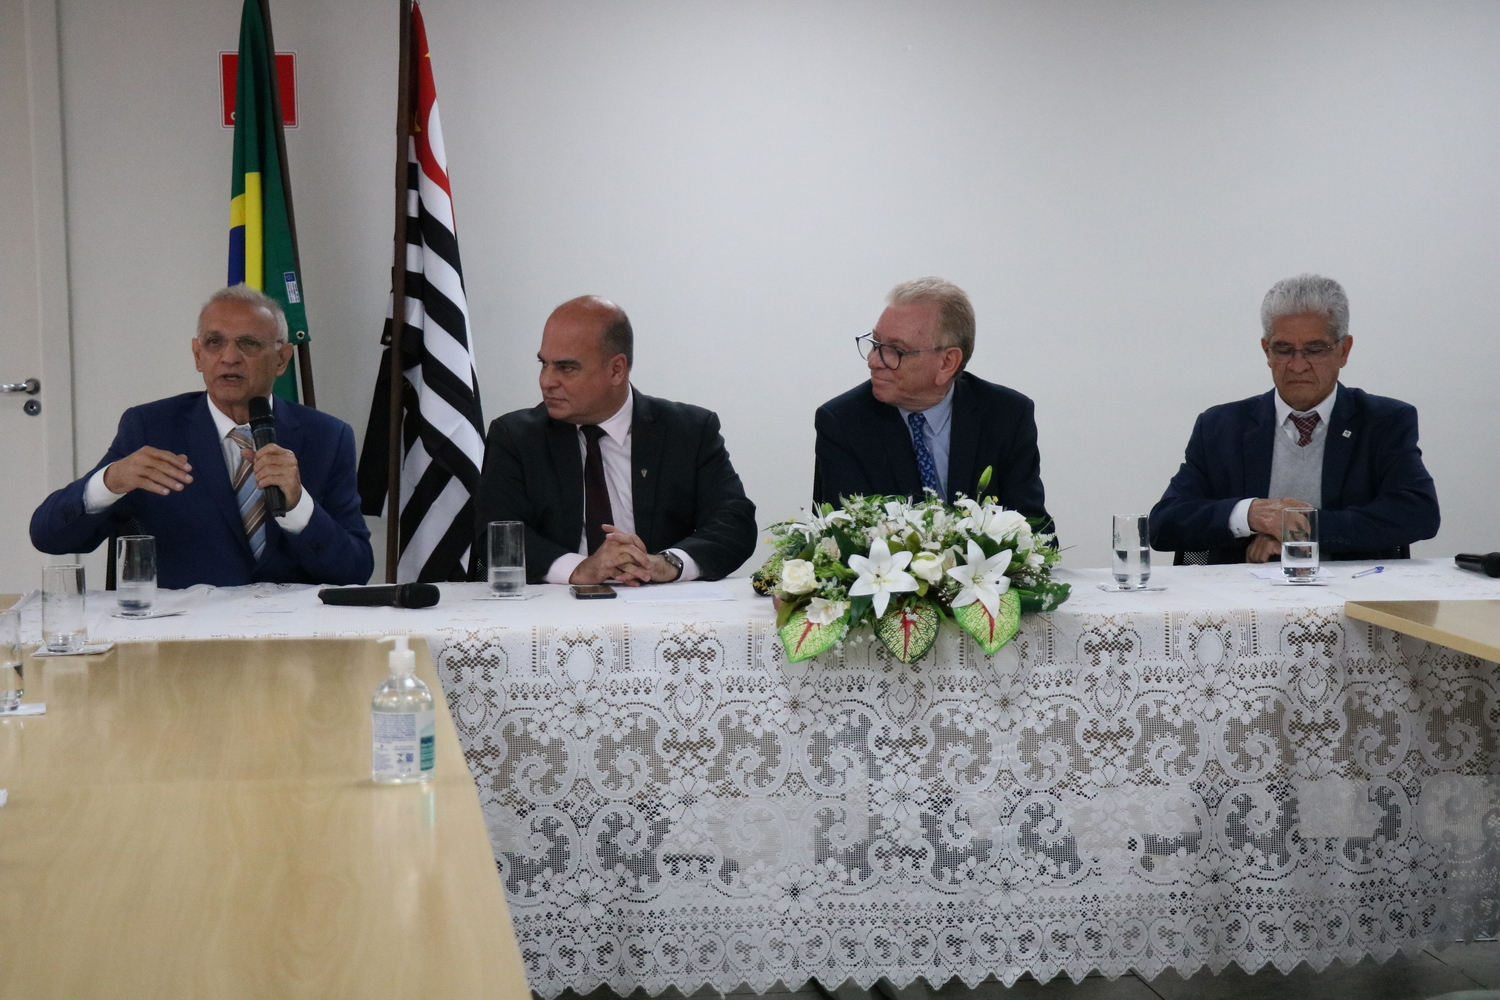 Quatro homens sentados à mesa, um deles fala ao microfone, ao fundo as bandeiras do Brasil e do estado de São Paulo.